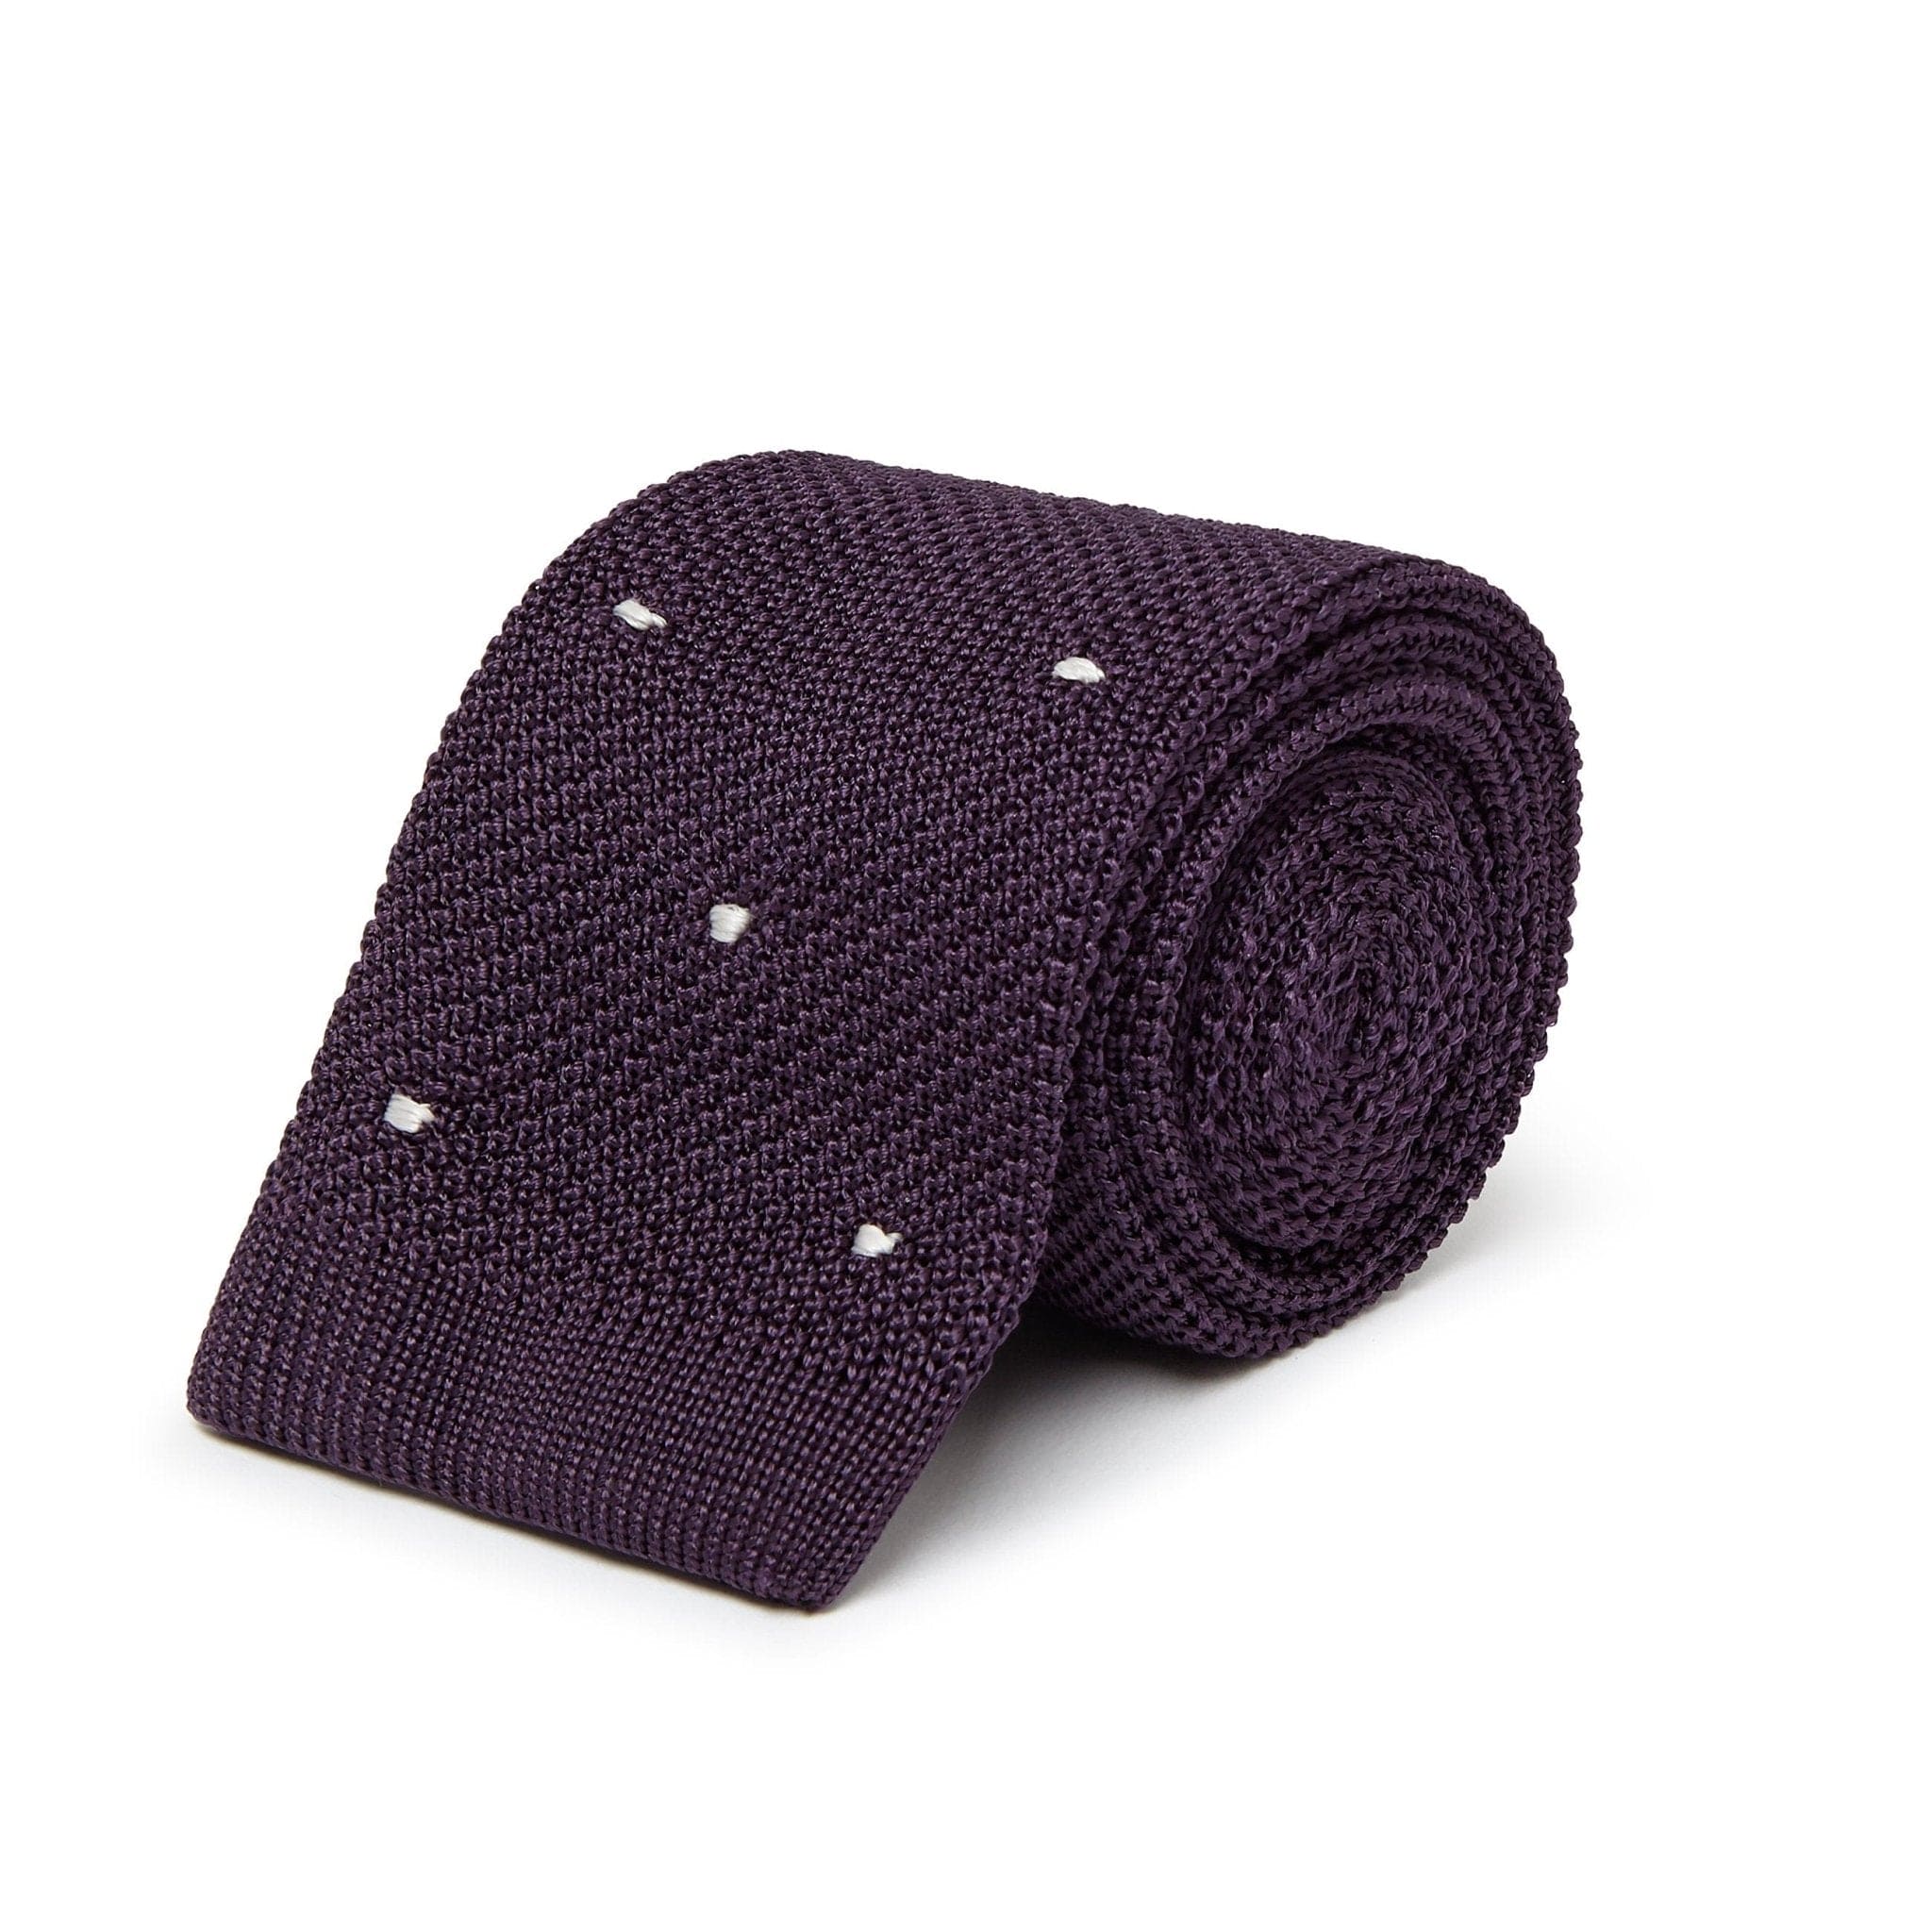 Dark Purple Knitted Silk Tie with White Spots